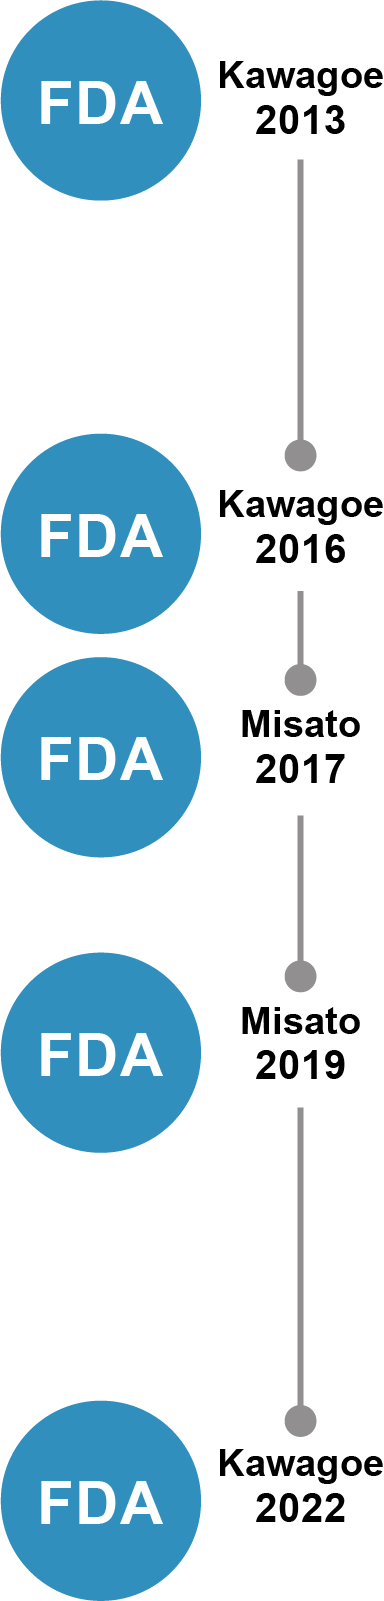 PDA Kawagoe 2013 FDA Kawagoe 2016 FDA Kawagoe 2017 FDA Misato 2019 FDA Misato  2022